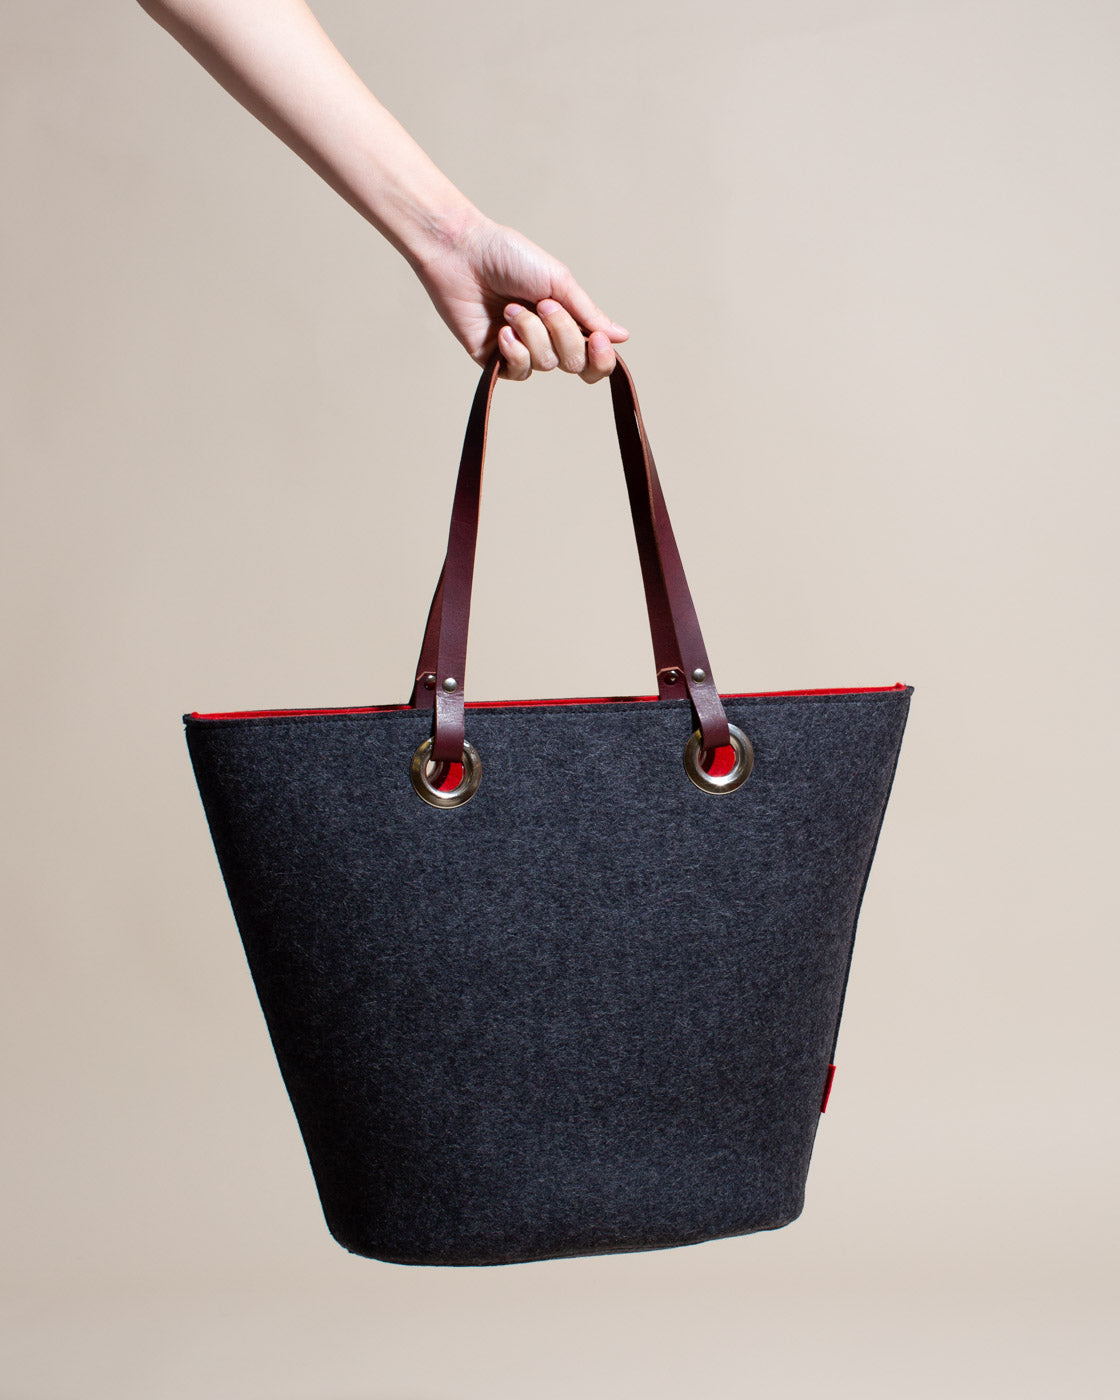 Fendi Baguette cashmere handbag curated on LTK